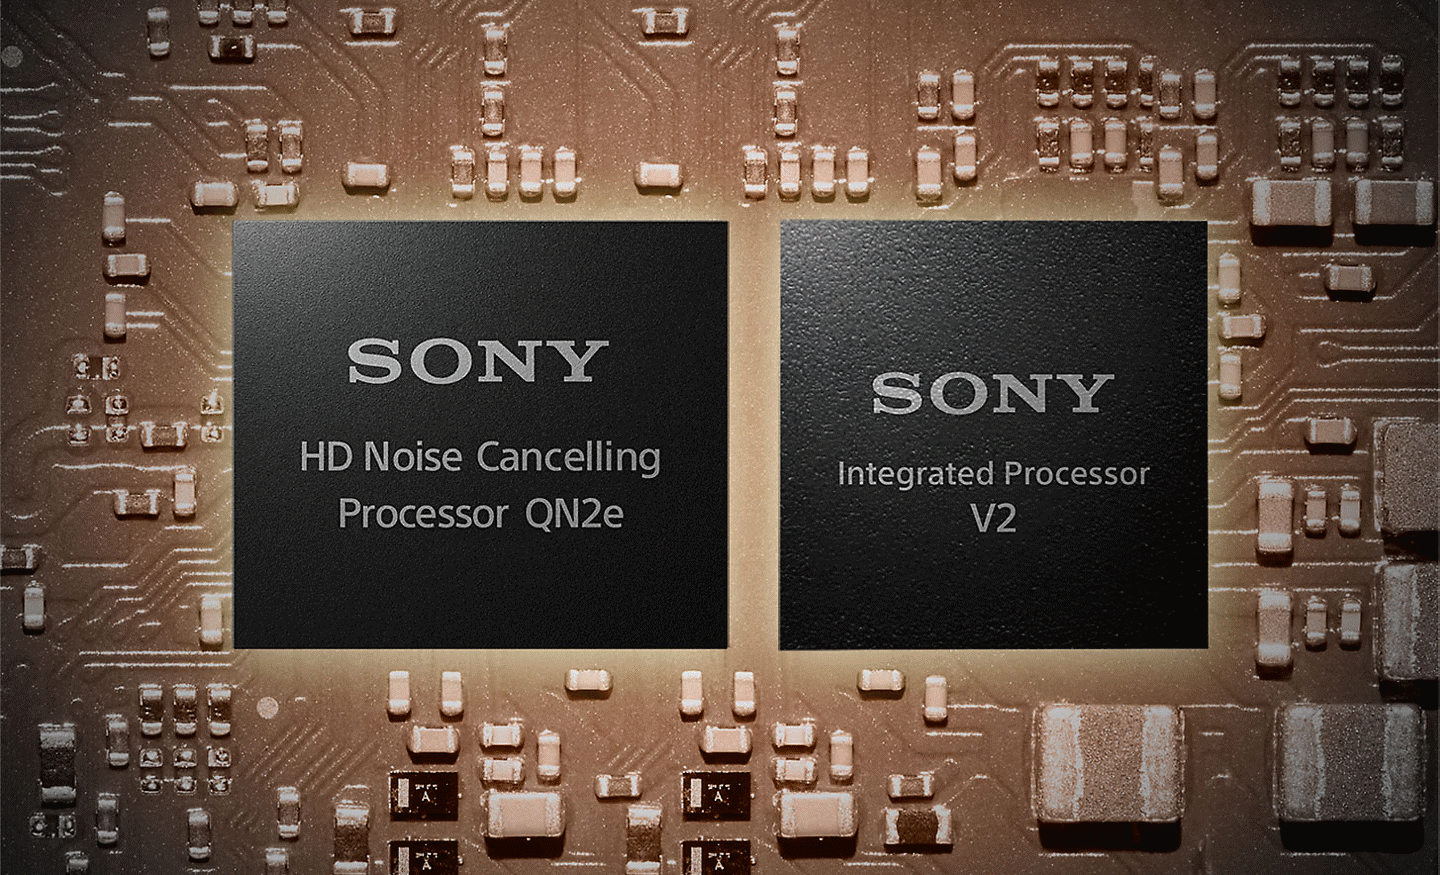 Image de deux processeurs sur une carte mère, à gauche un processeur de réduction de bruit HD et à droite le processeur intégré V2